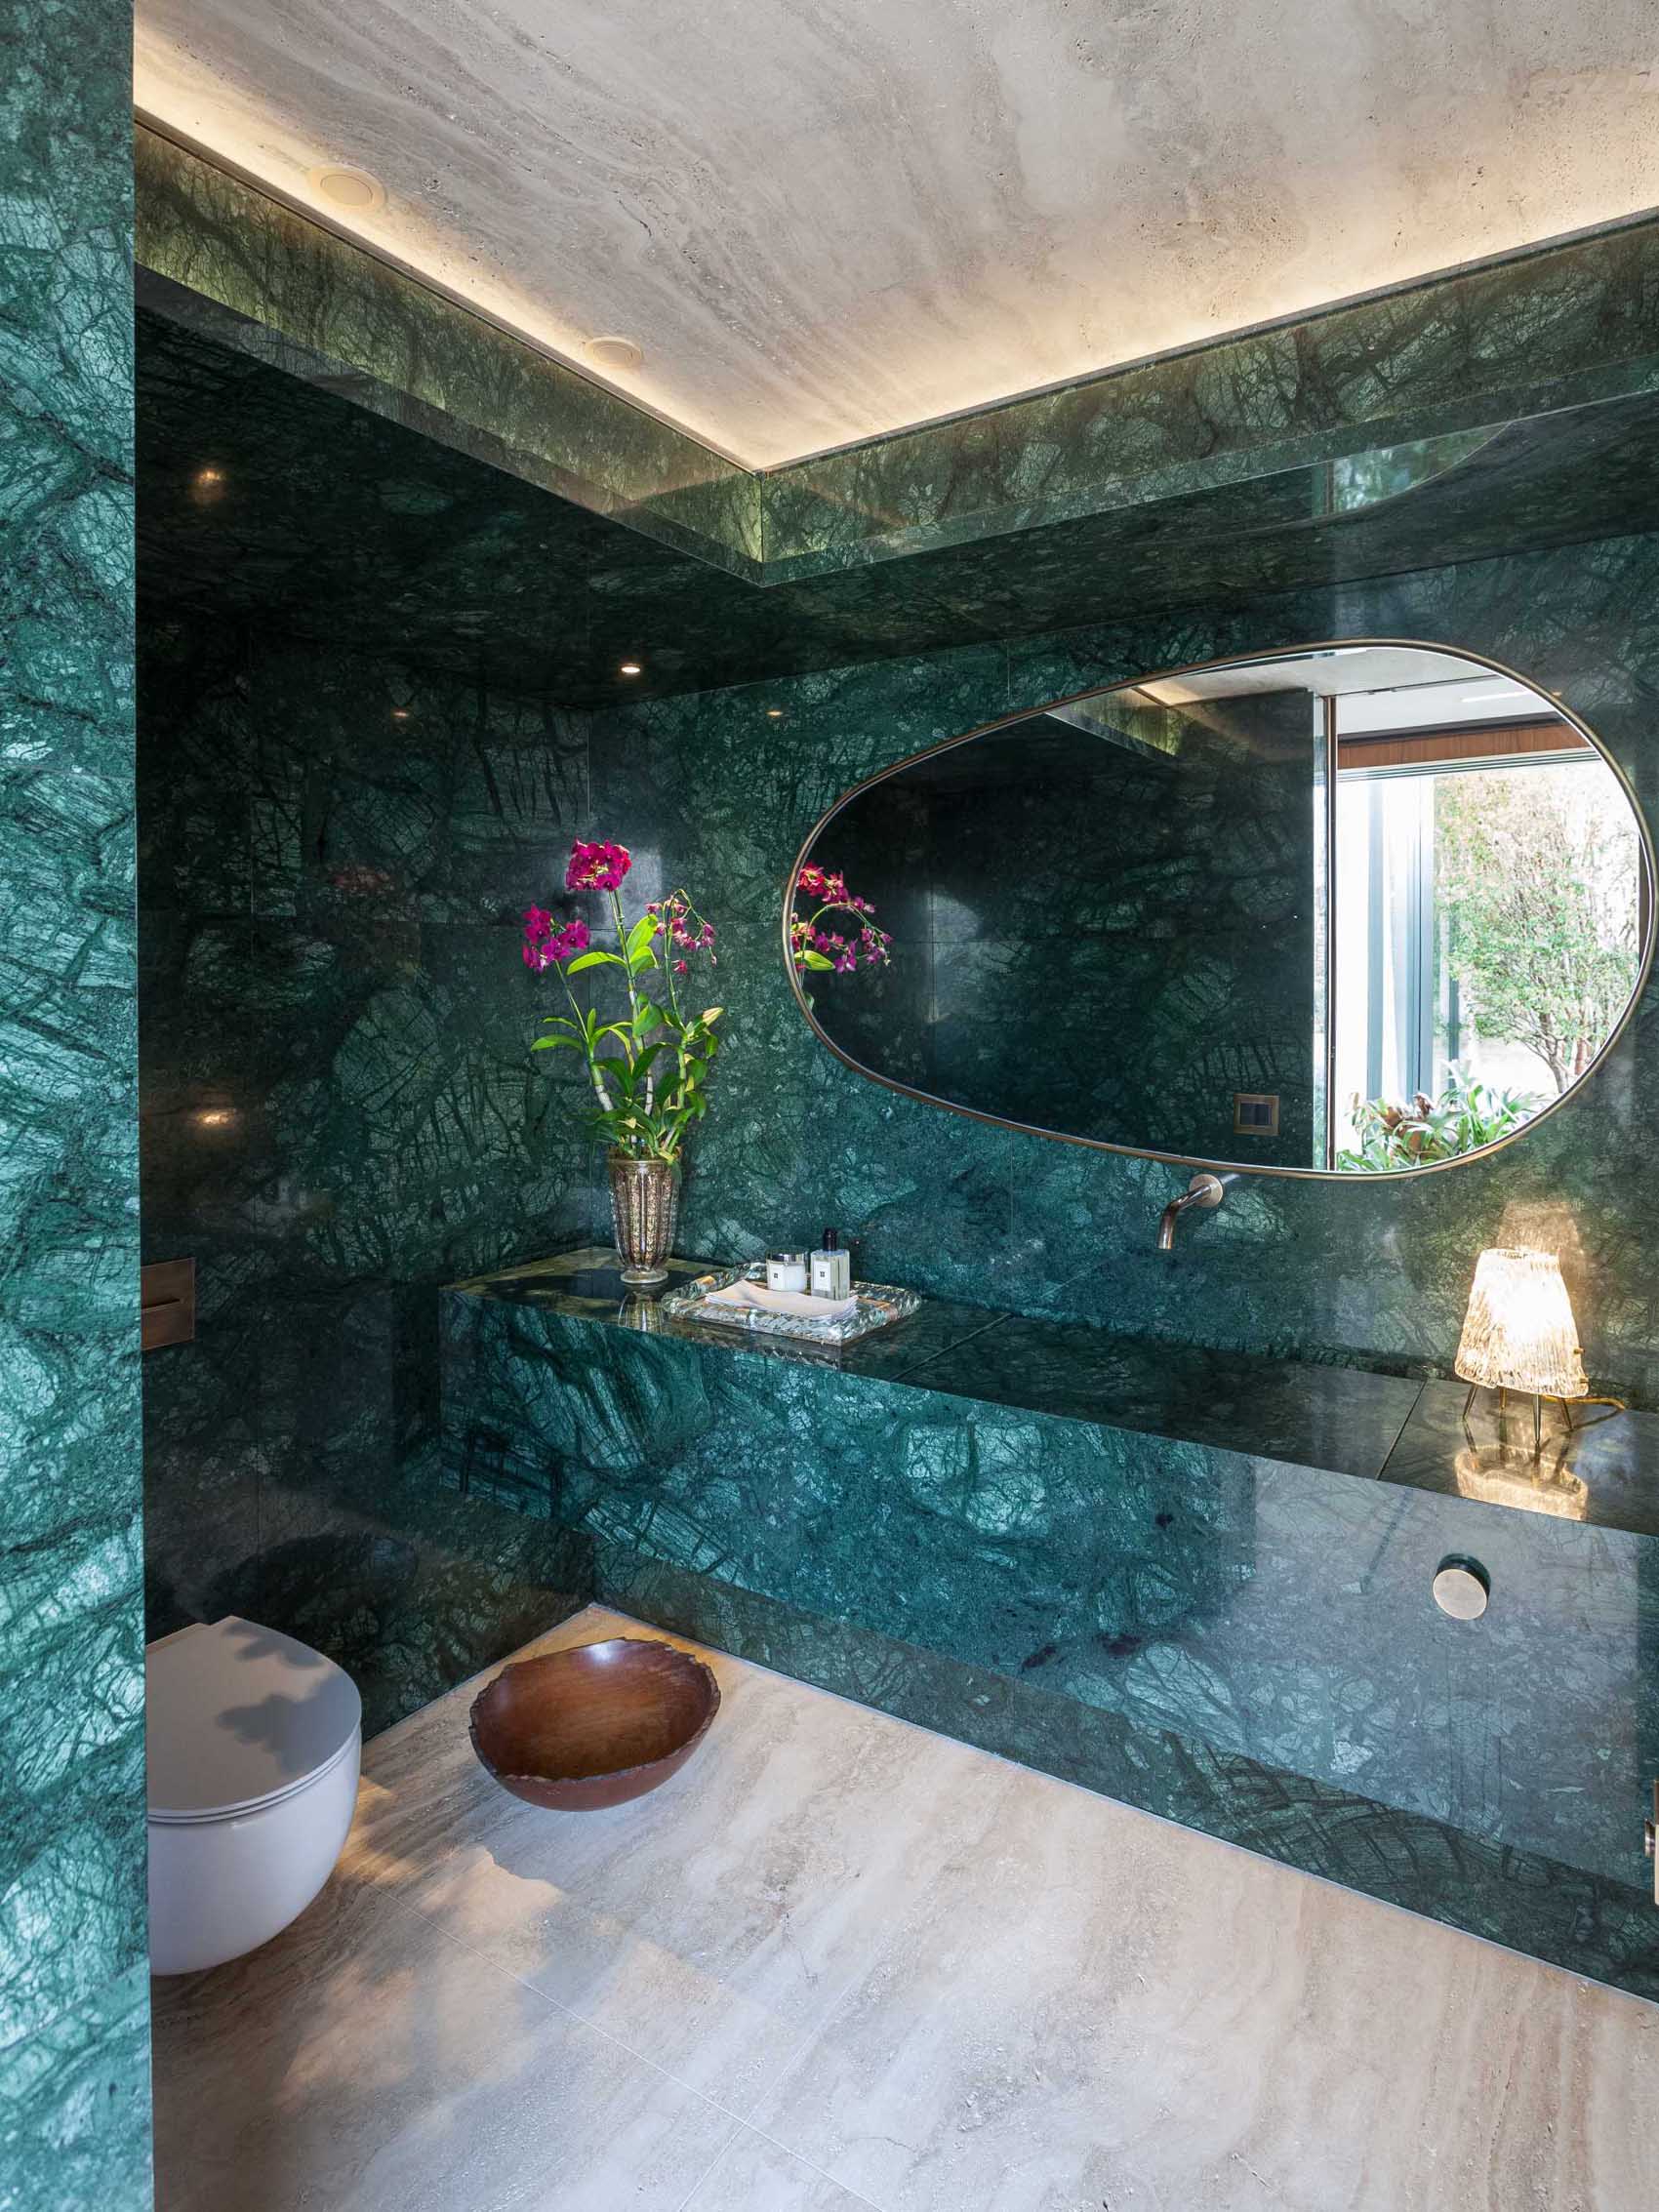 در این حمام از سنگ مرمر سبز گواتمالایی برای خط کشی دیوارها و روشویی استفاده شده است.